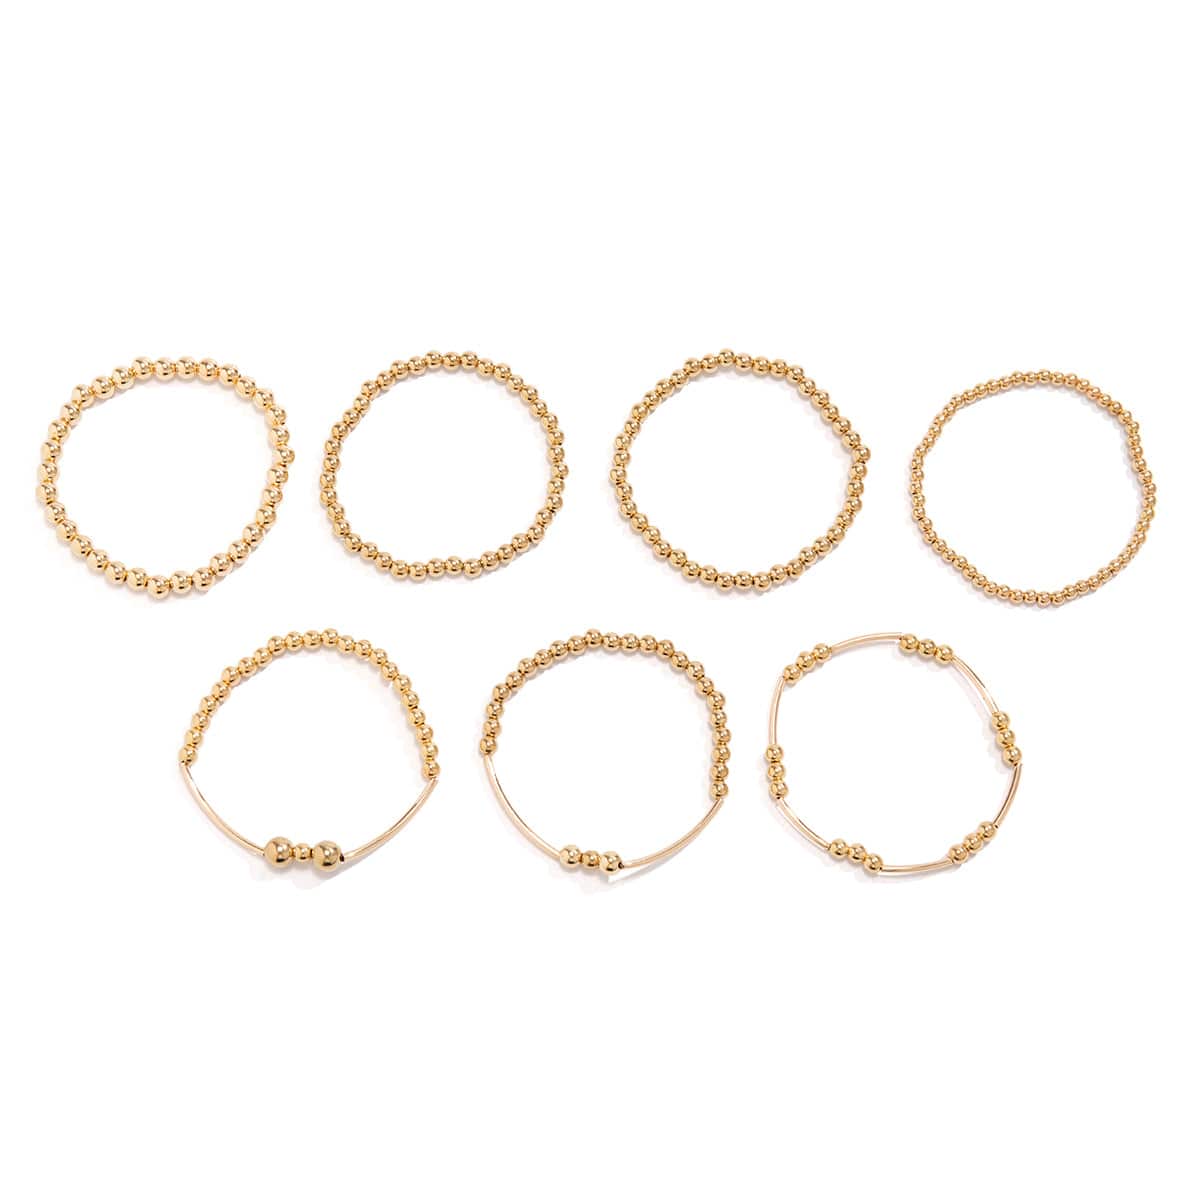 7 Pcs Gold Plated Ball Chain Stackable Bracelet Set - ArtGalleryZen